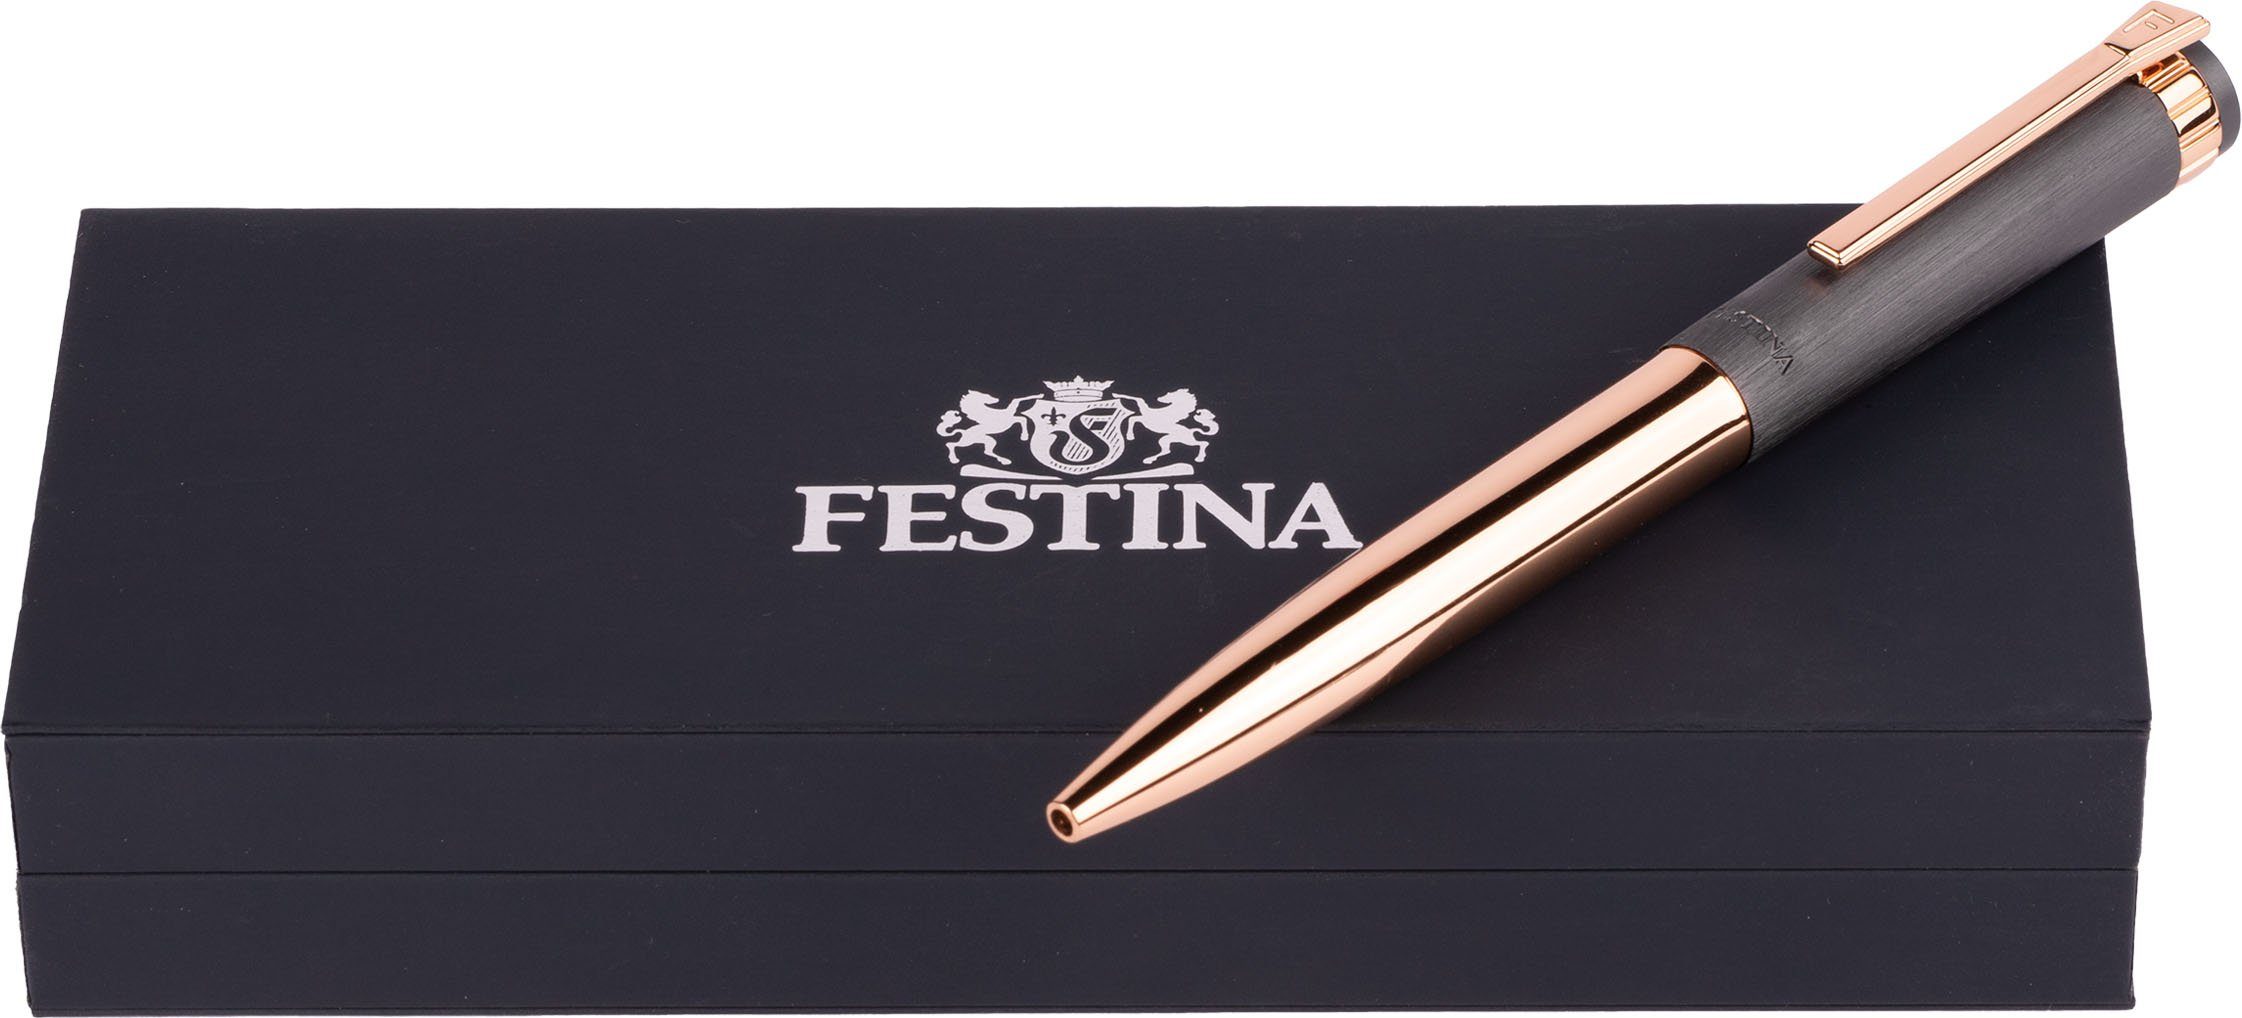 Festina ideal auch Etui, FWS4107/D, Kugelschreiber Geschenk inklusive Prestige, als